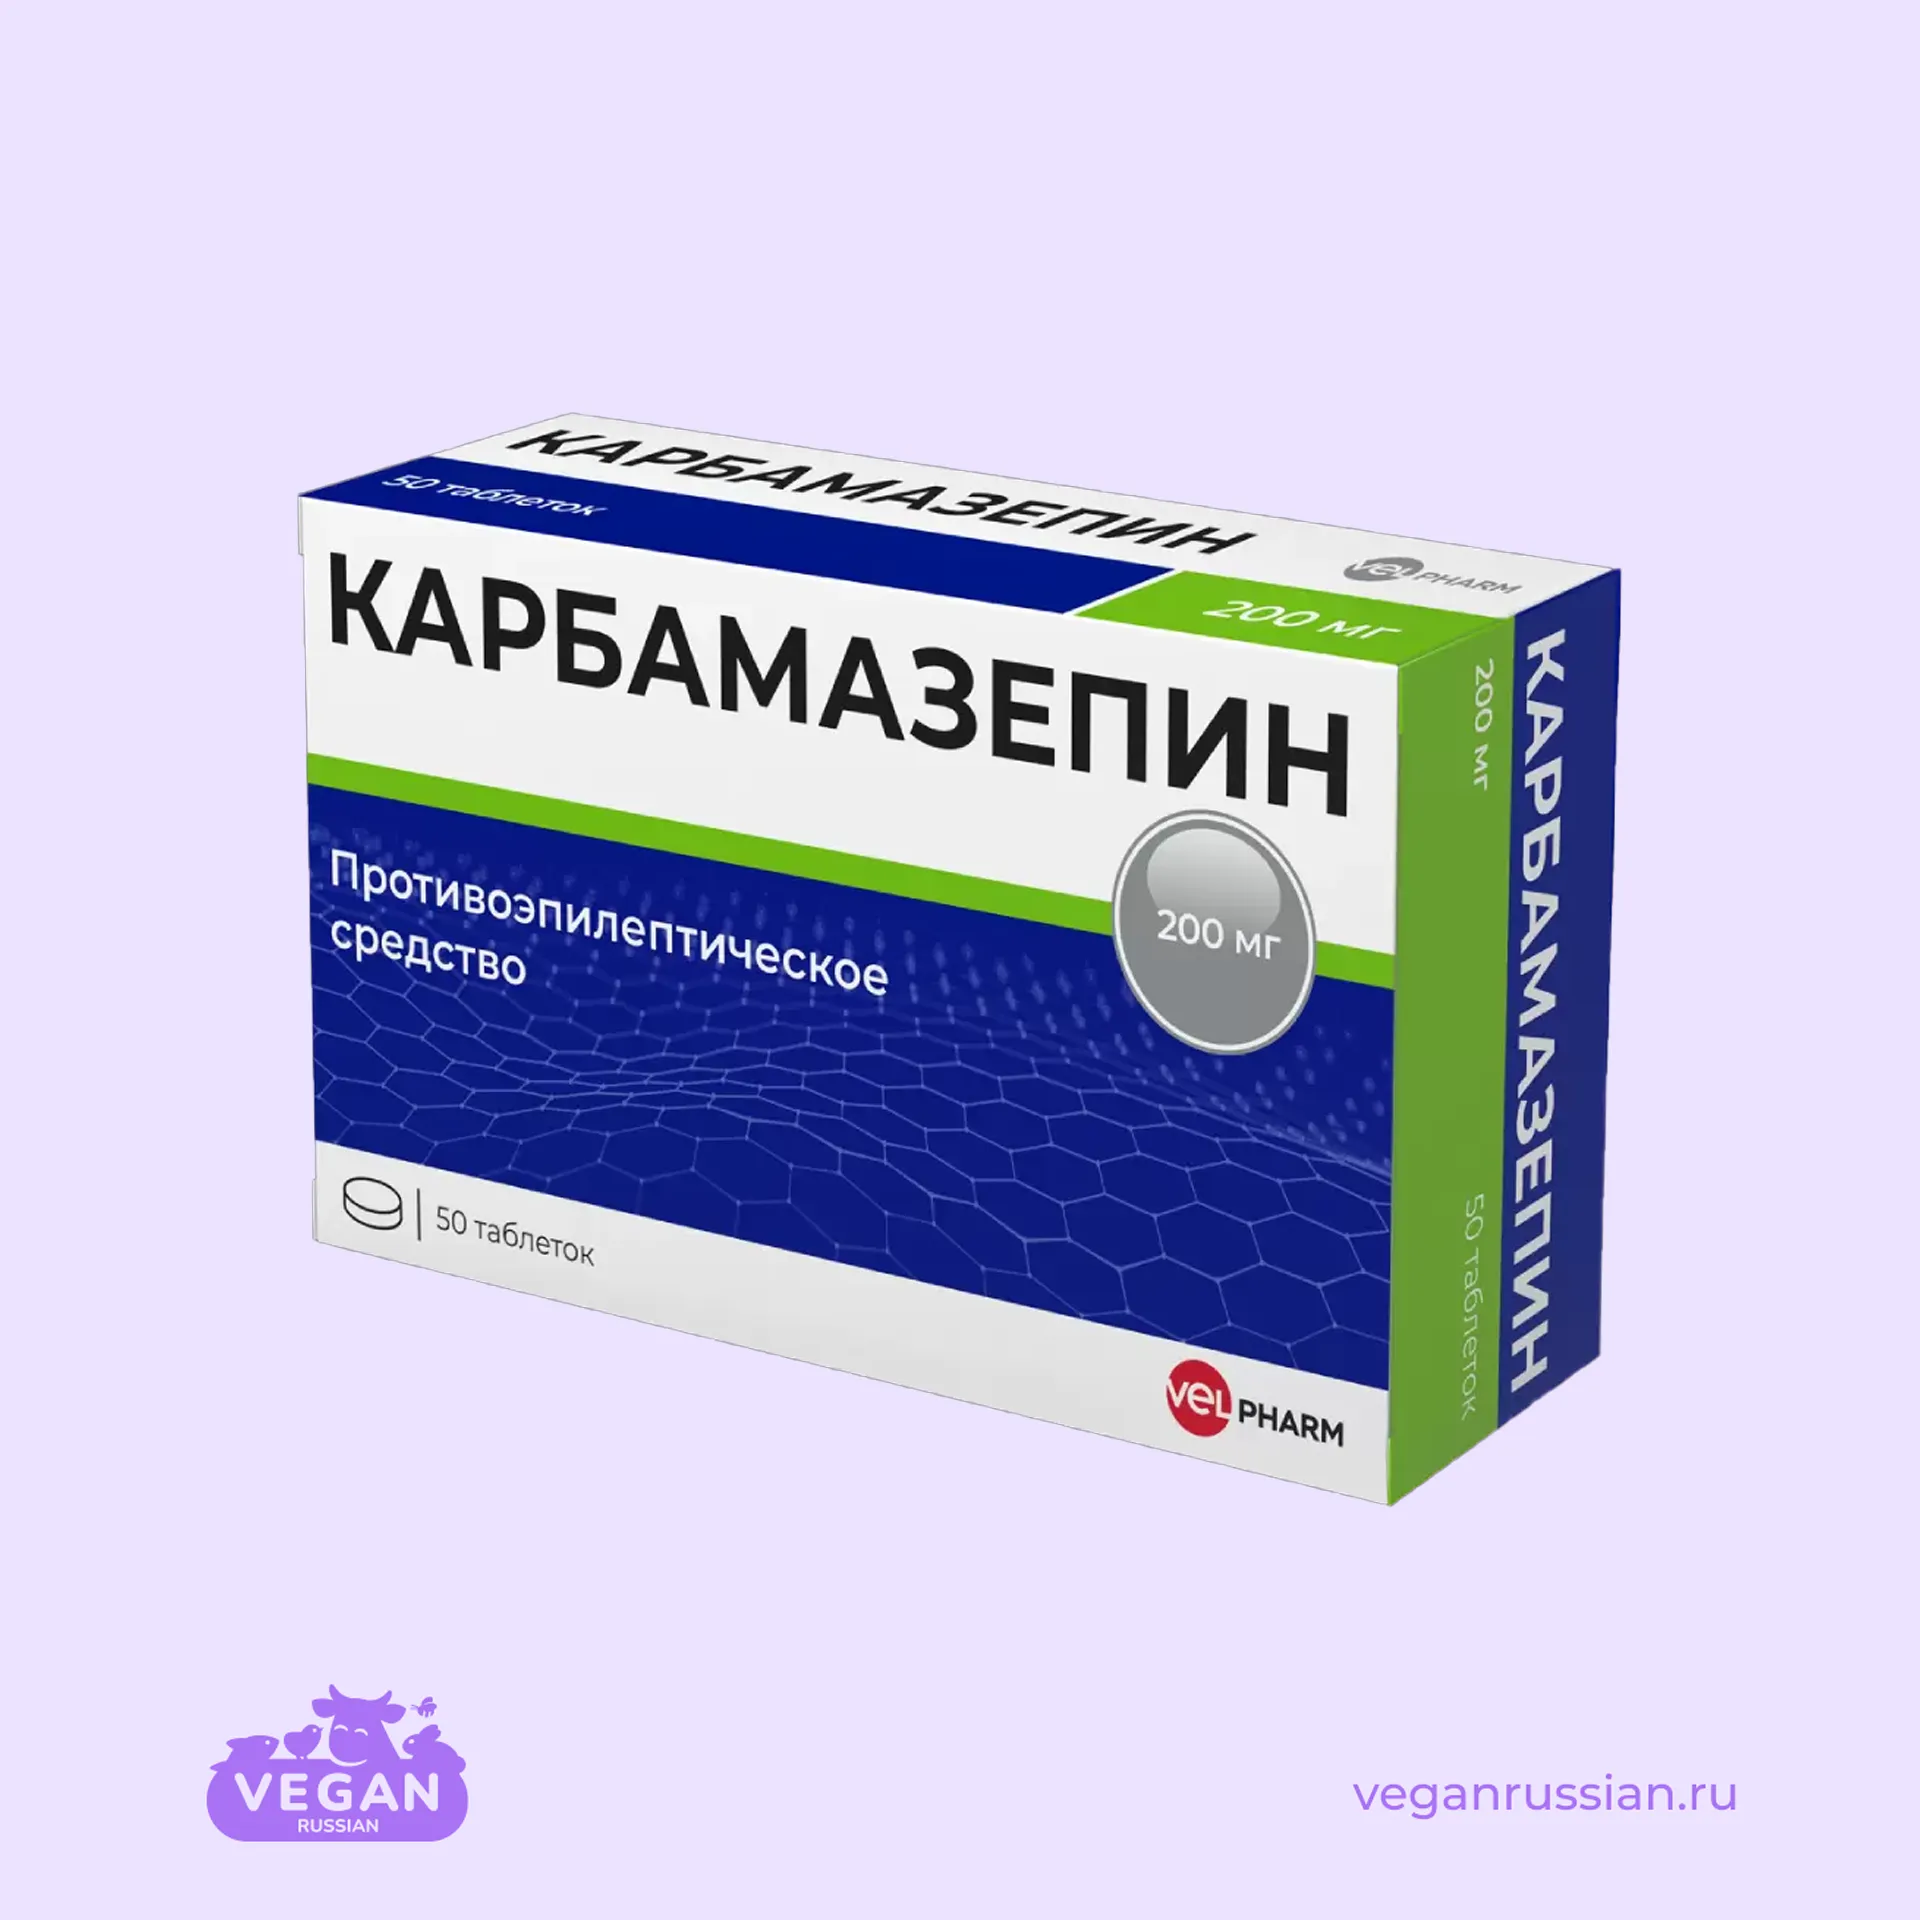 Карбамазепин Велфарм 50 шт 200 мг